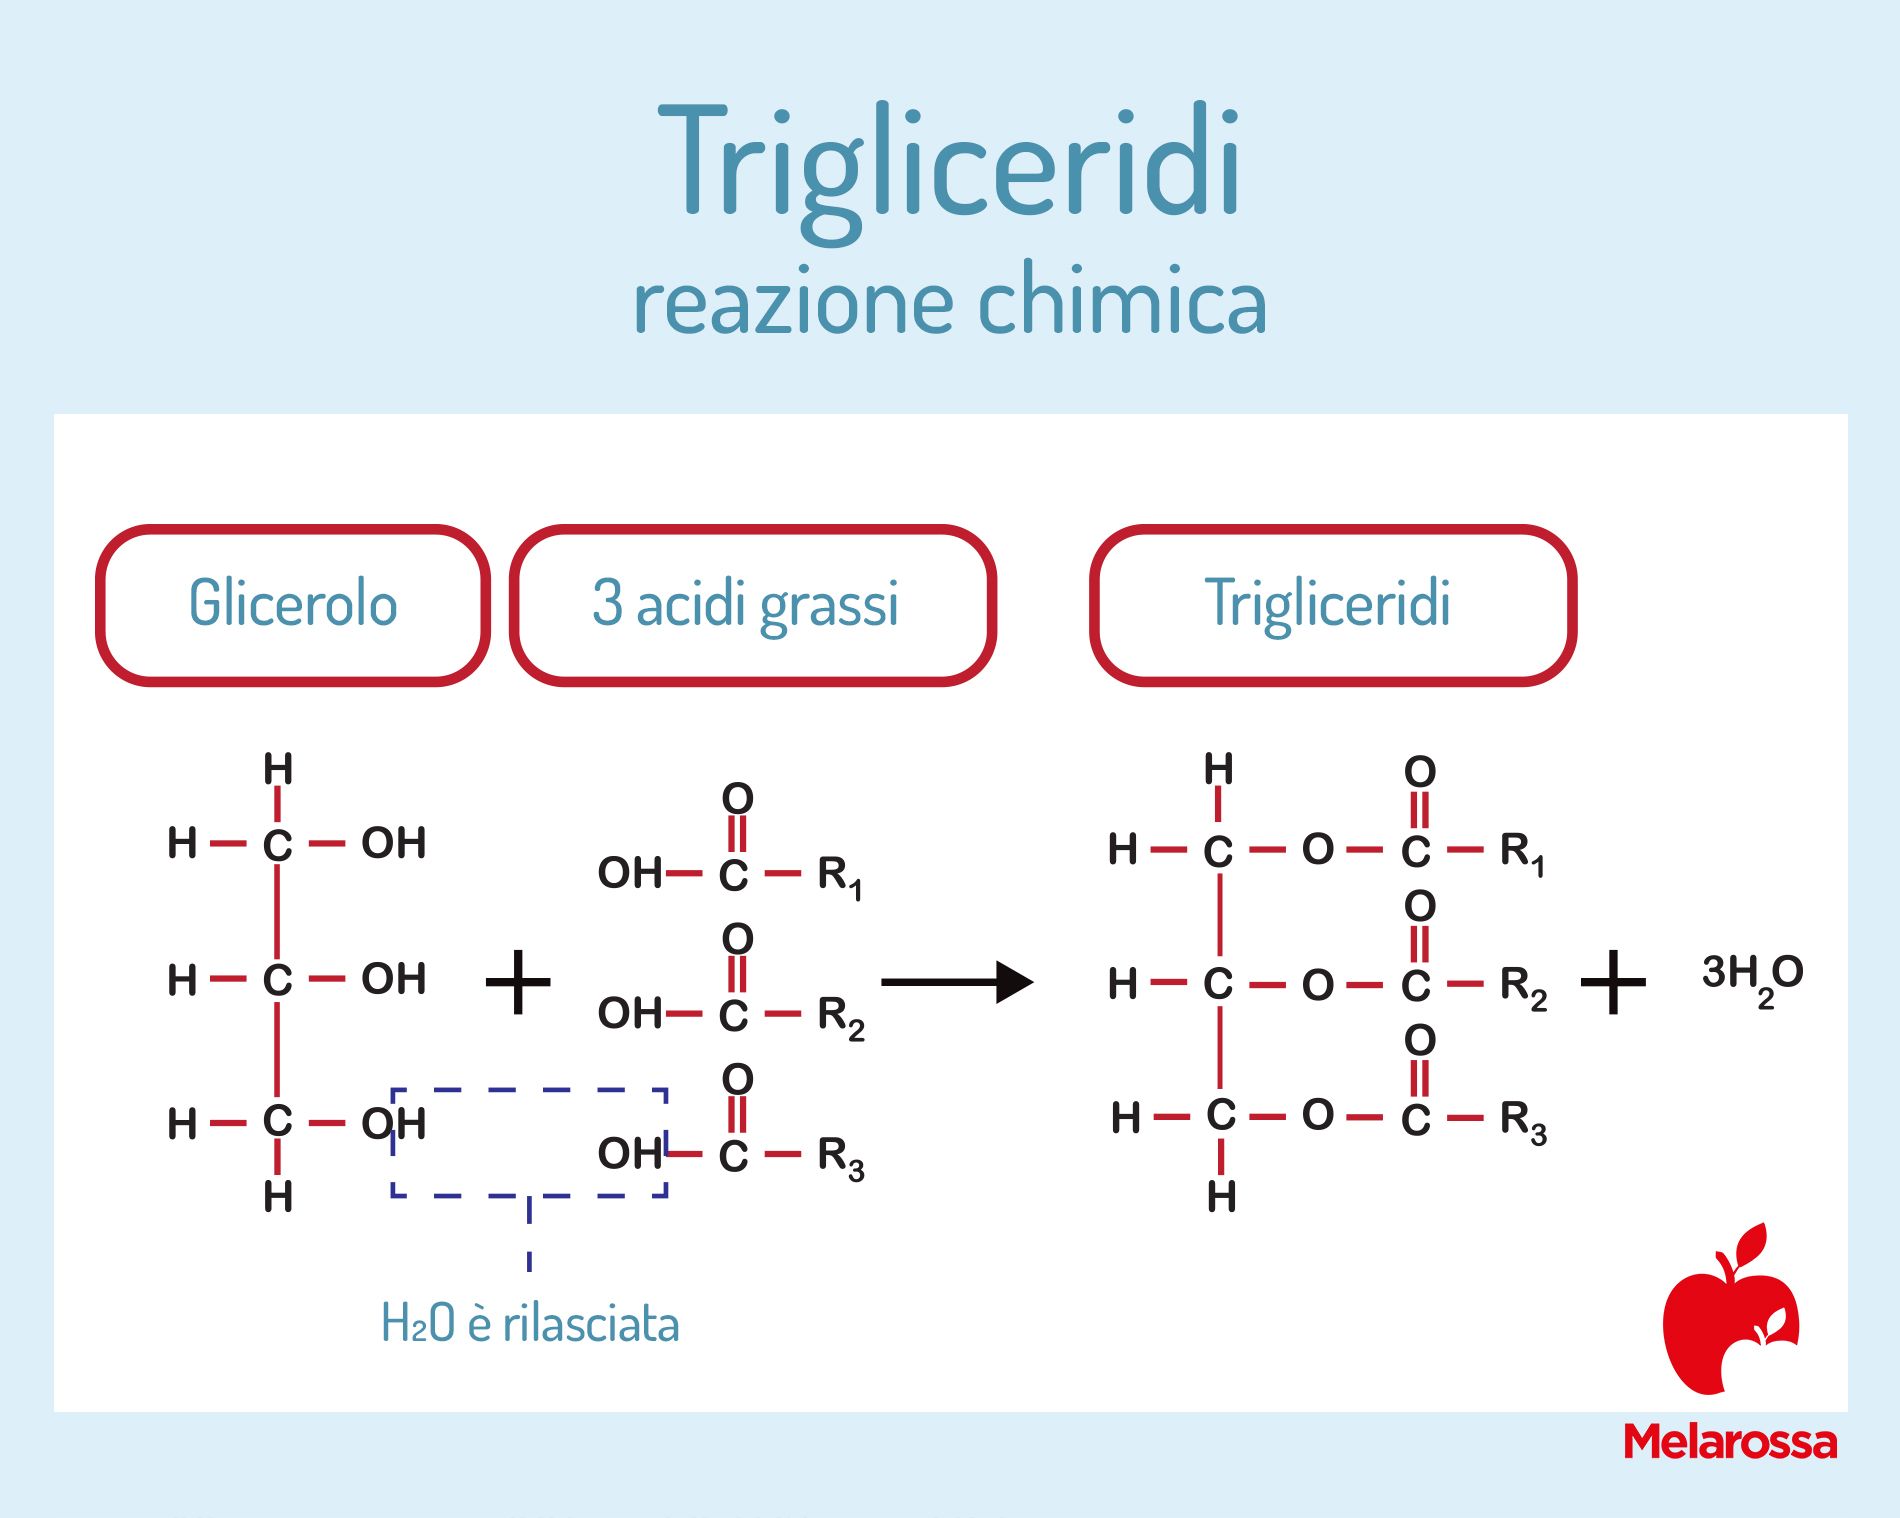 trigliceridi: reazione chimica 